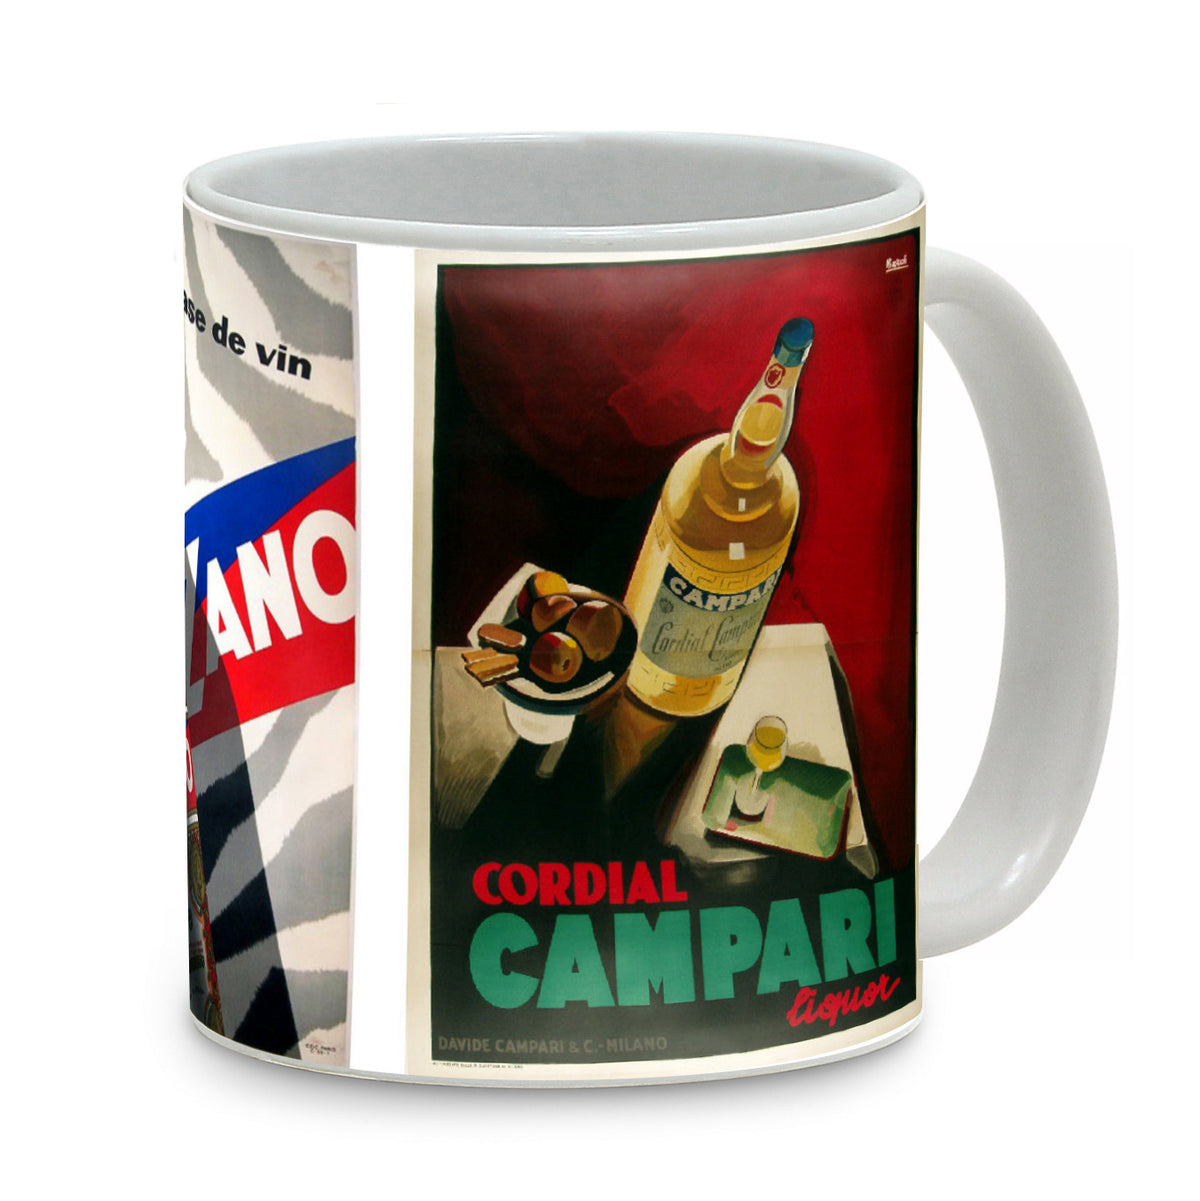 SUBLIMART: Bella Italia - Mug featuring Italian vintage posters (Aperol, Cinzano, Campari) - Artistica.com